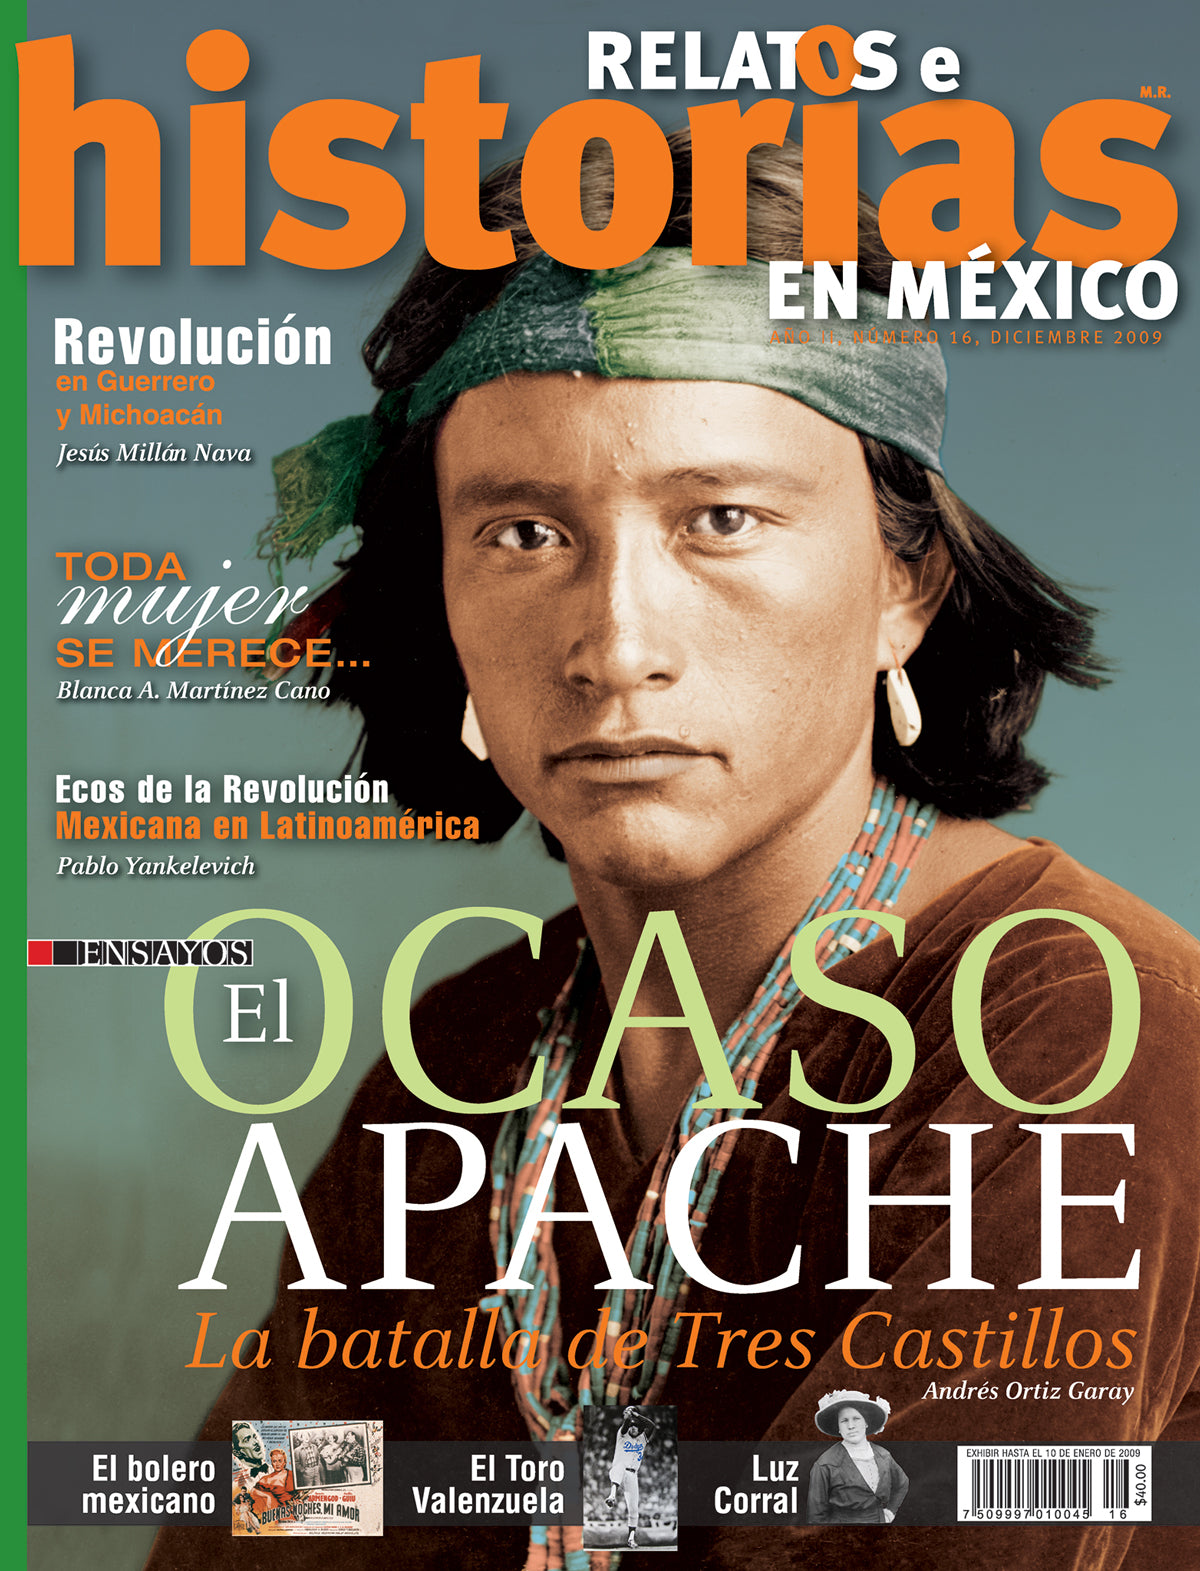 El ocaso apache